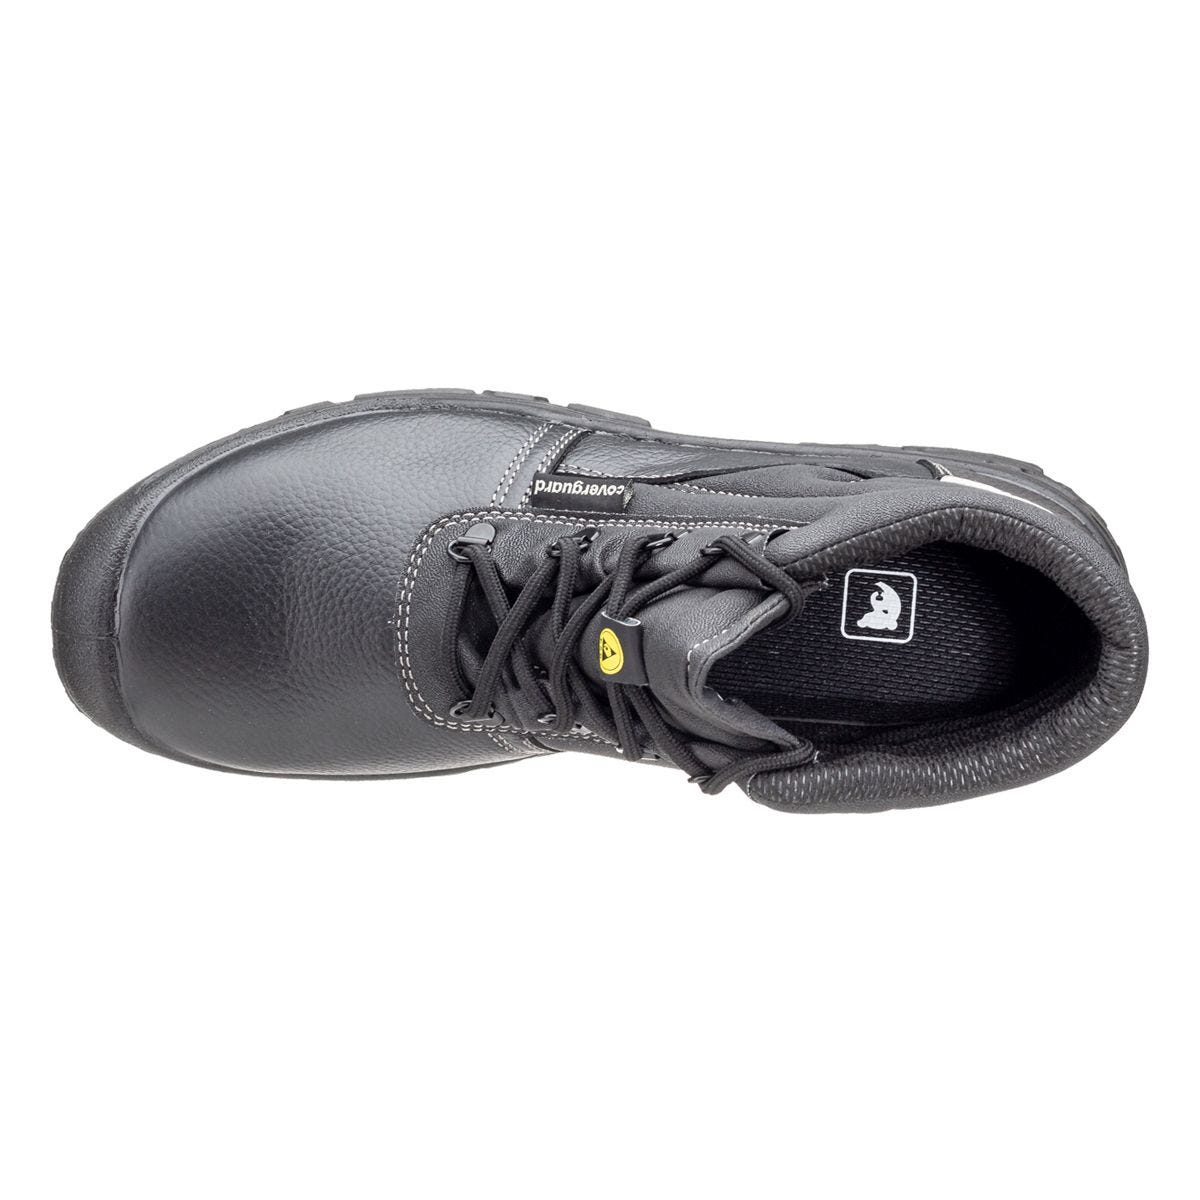 Chaussures de sécurité hautes Azurite II S3 ESD noir - Coverguard - Taille 44 3